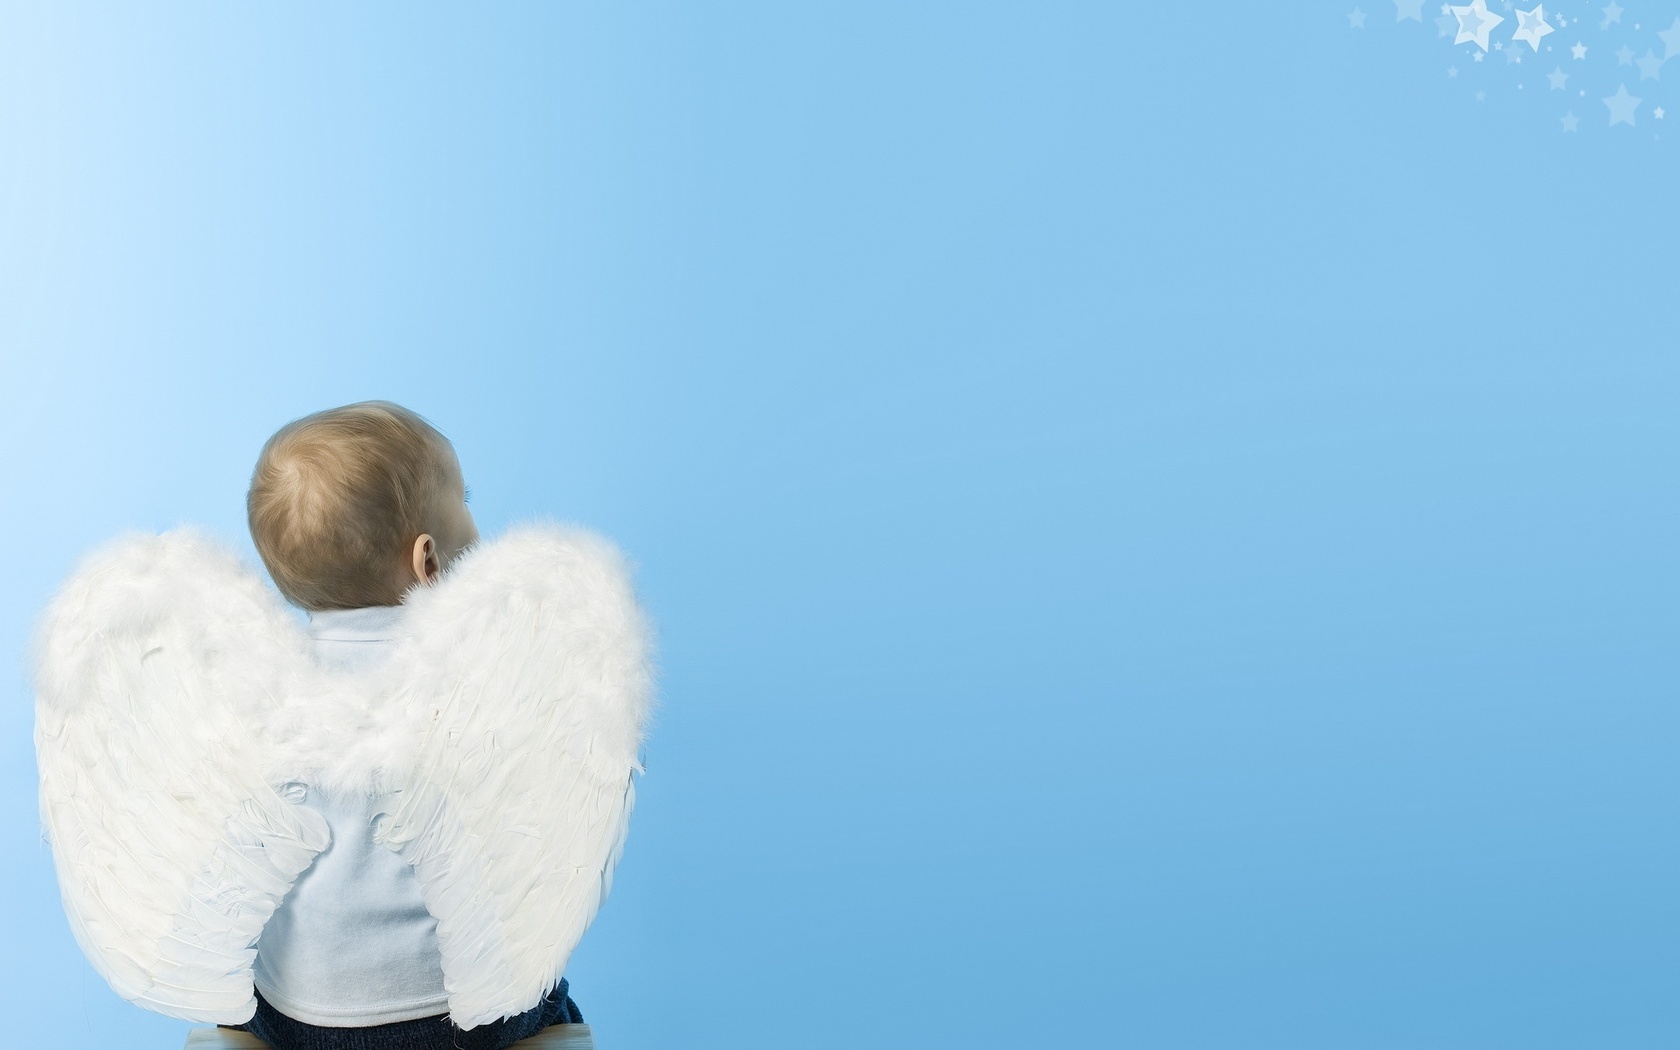  Baby  Angel  Wallpaper  WallpaperSafari